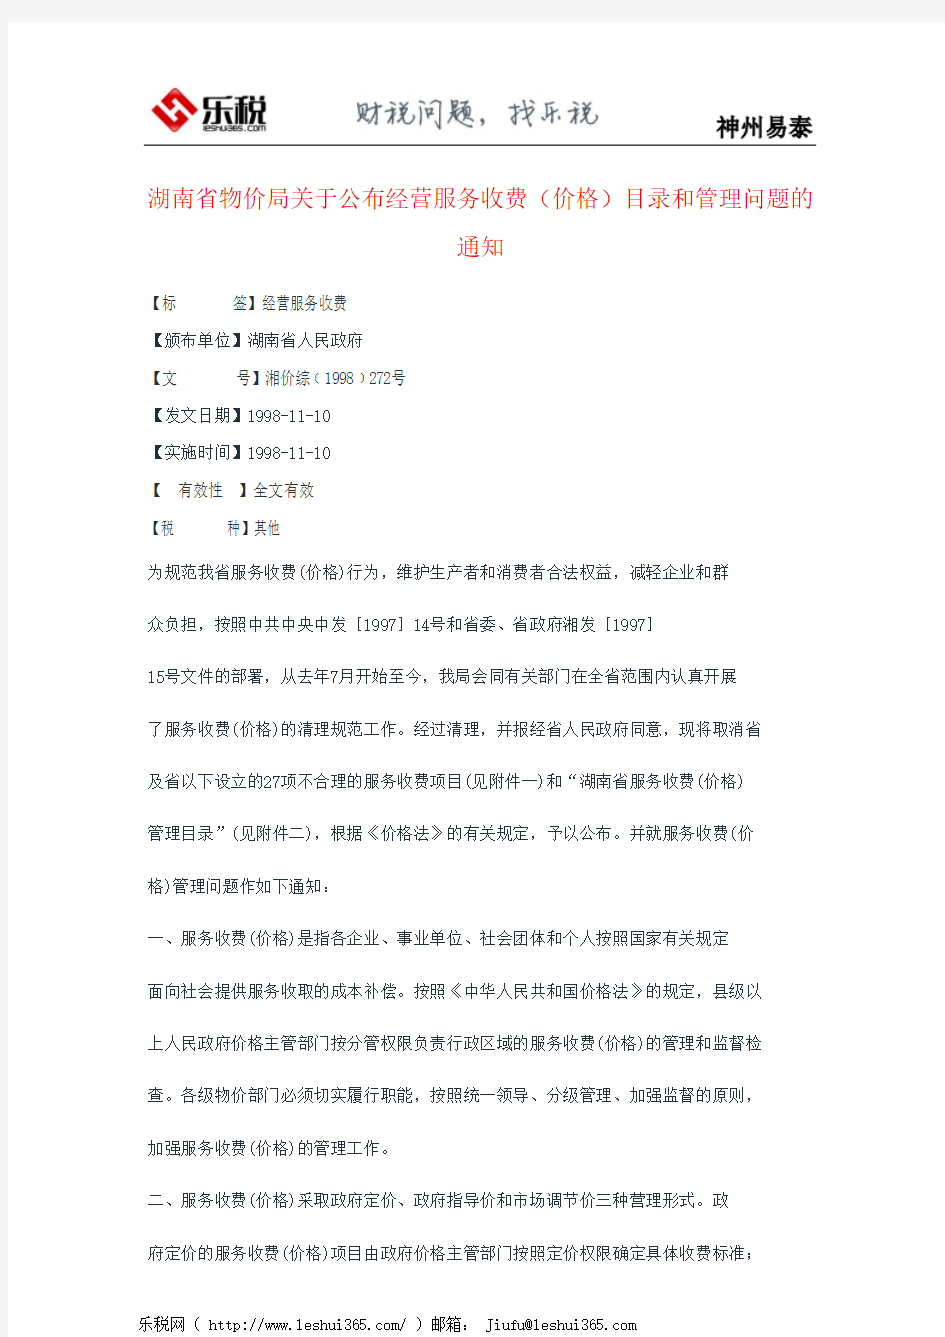 湖南省物价局关于公布经营服务收费(价格)目录和管理问题的通知